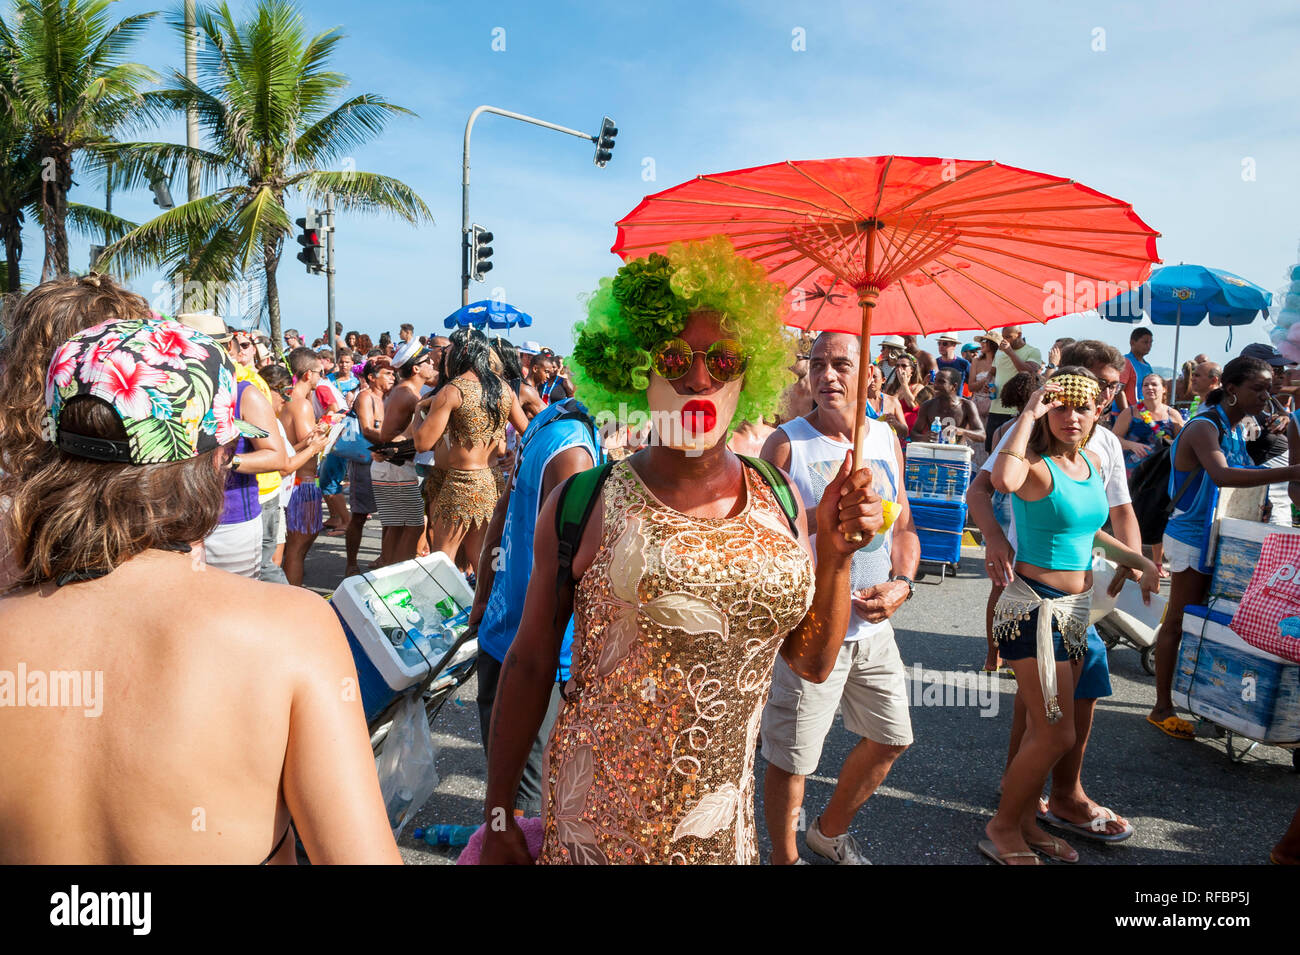 RIO DE JANEIRO - Febbraio 07, 2016: un uomo brasiliano in femminile fiammeggiante trascinare costume passeggiate con un ombrellone rosso al Carnevale street party in Ipanema Foto Stock